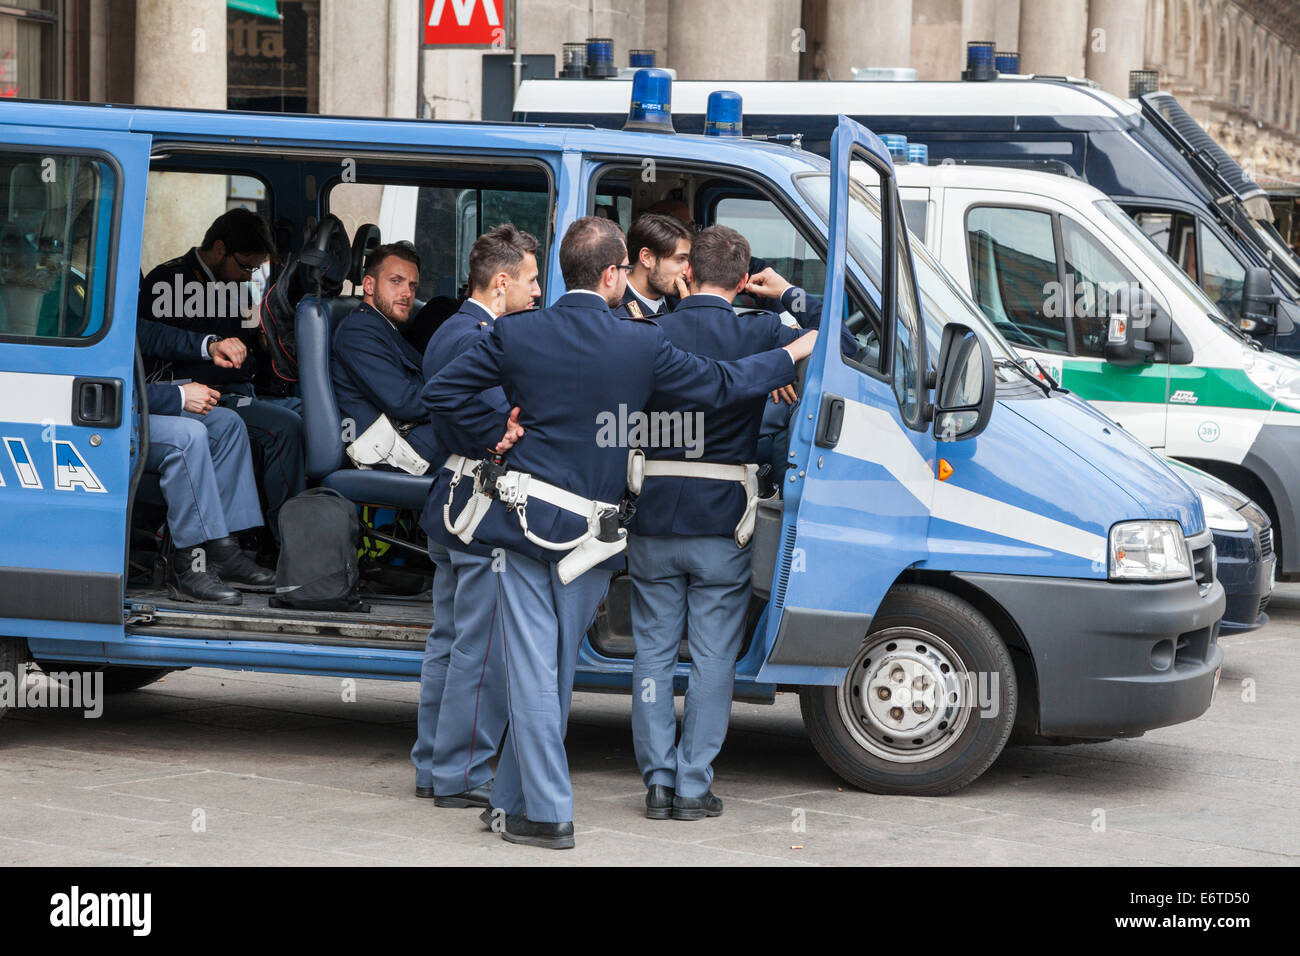 Groupe d'Italien Polizia policiers autour d'un fourgon de police sur la Piazza Duomo, Milan, Italie Banque D'Images